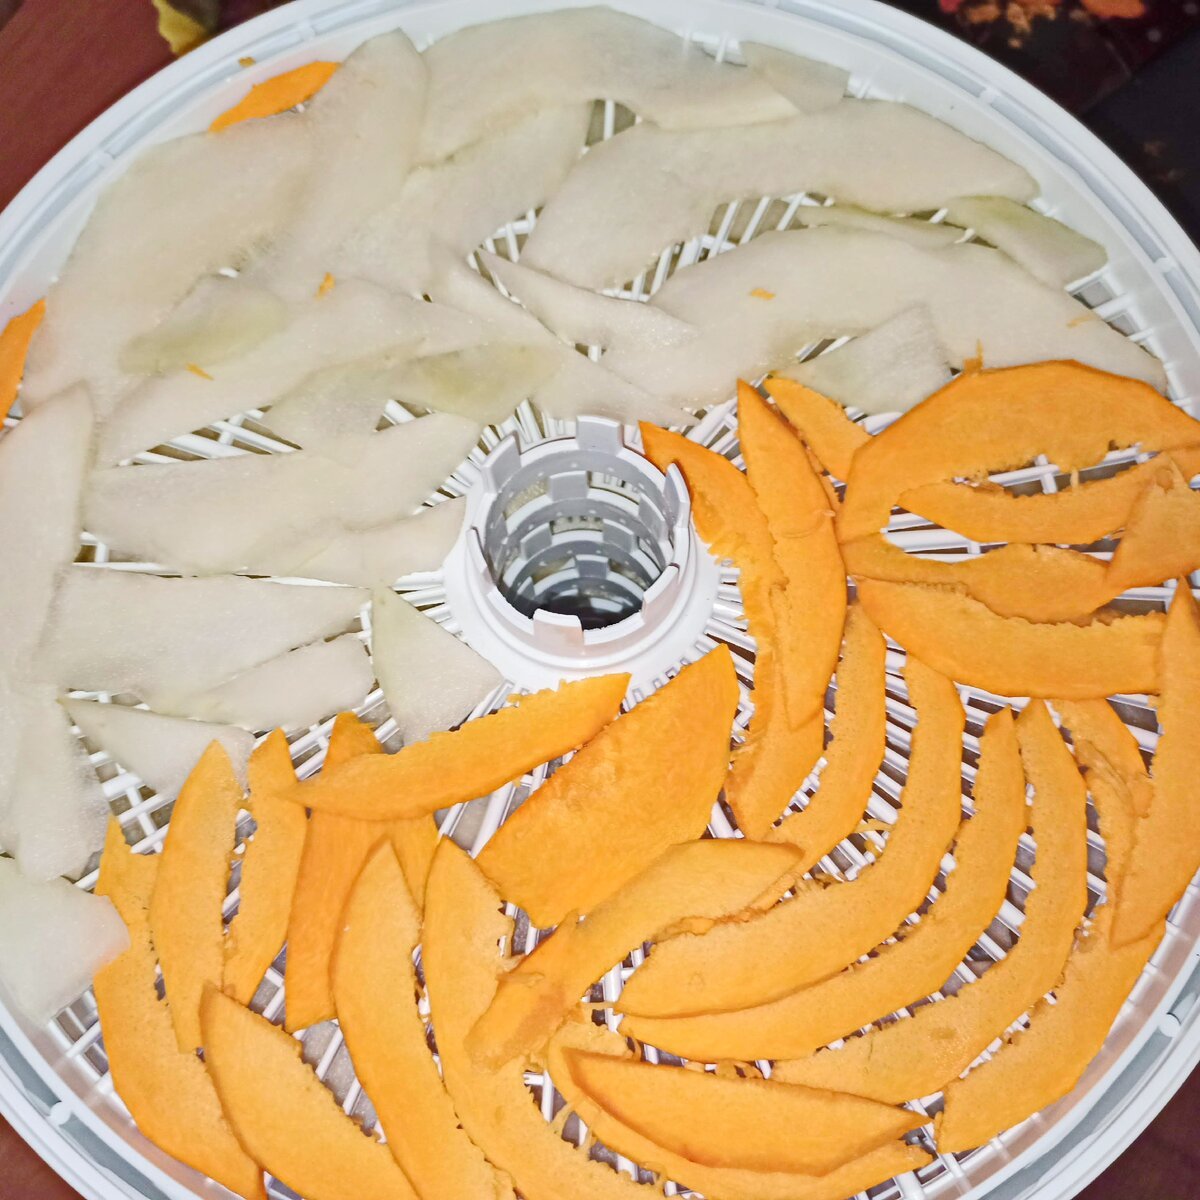 Картофельные чипсы в сушилке рецепт с фото пошагово